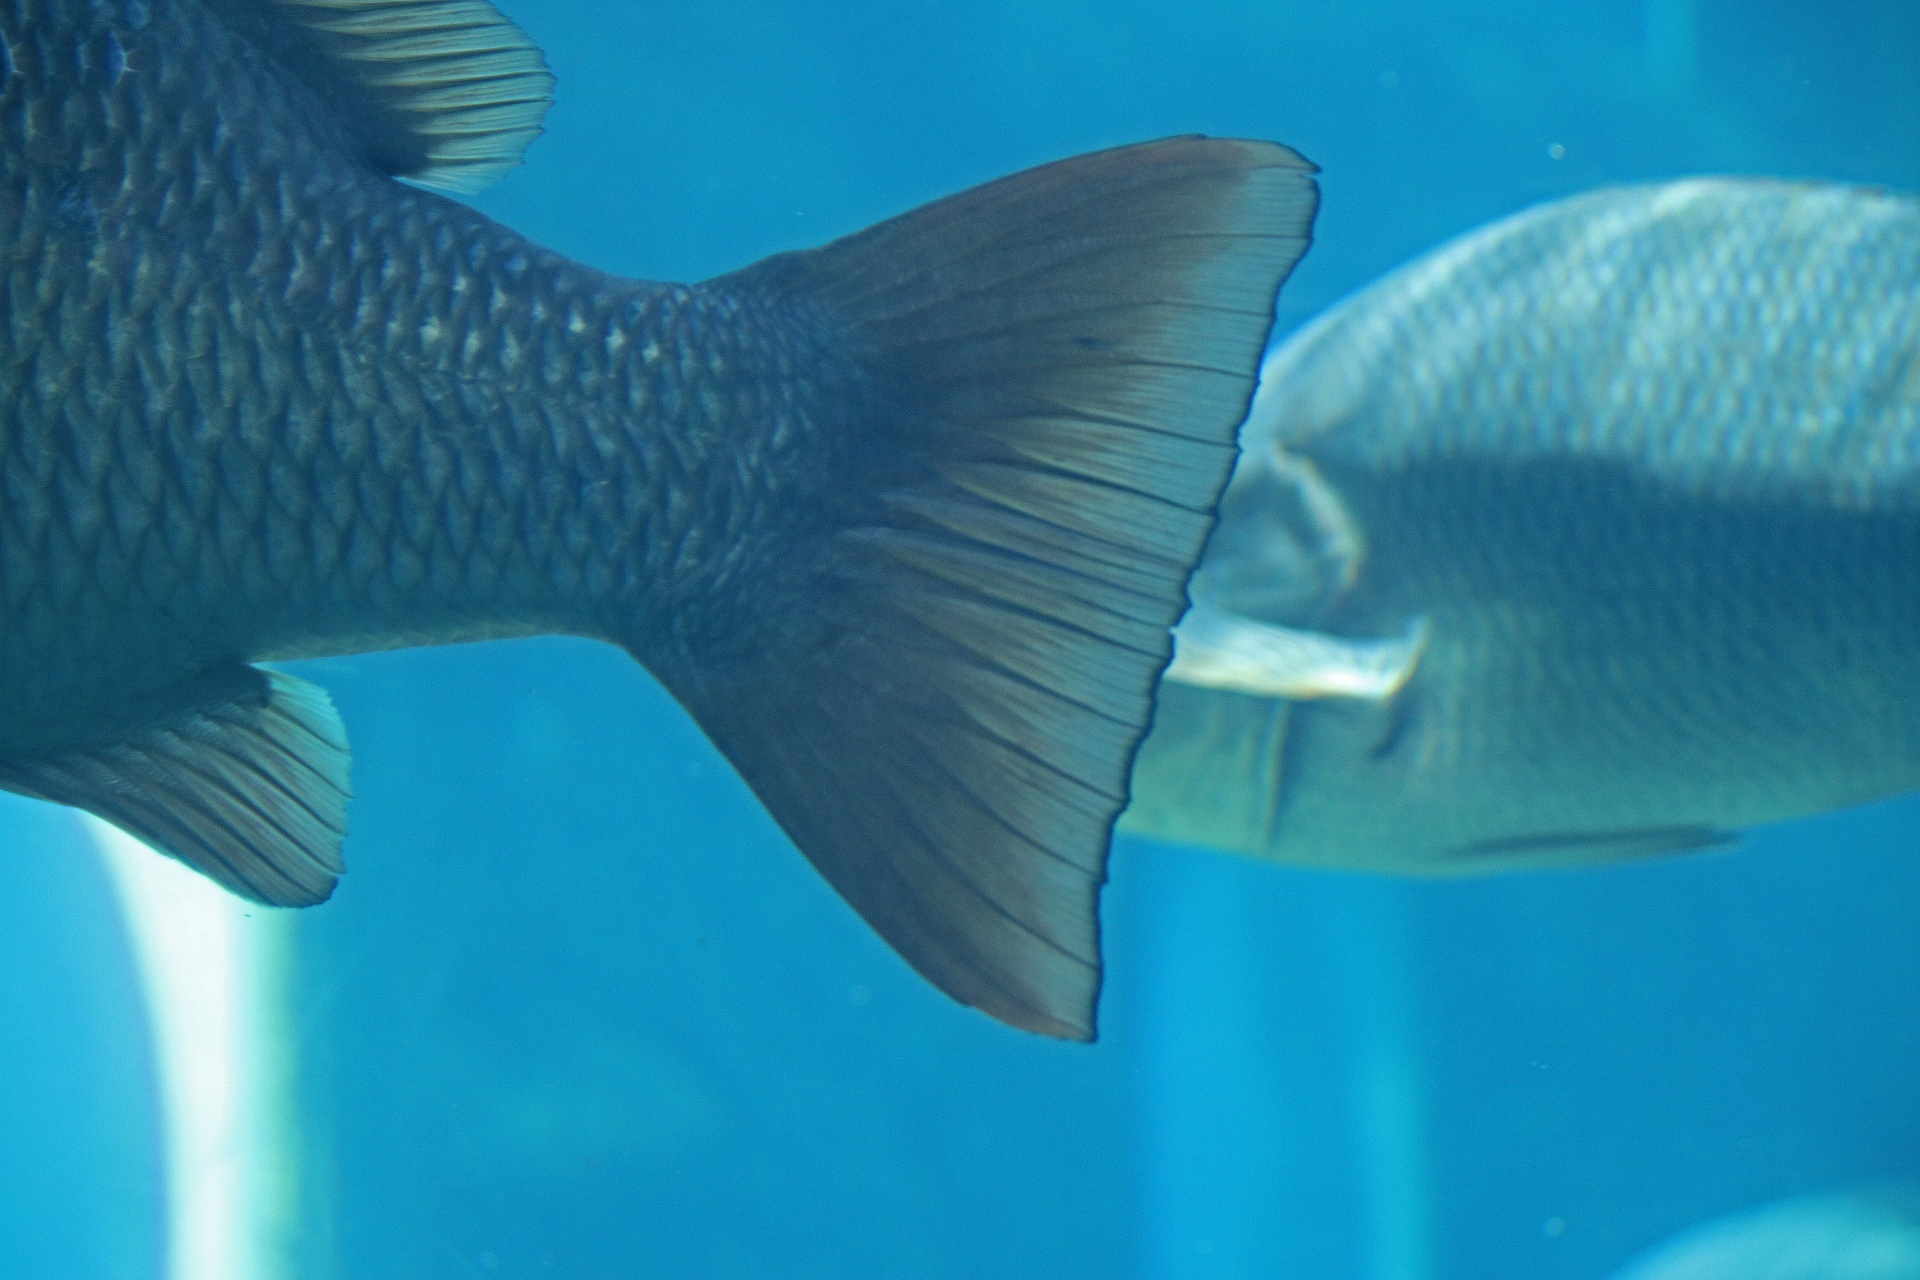 色彩鲜艳的热带鱼和海底生物 - 尼康 D800 样张 - PConline数码相机样张库